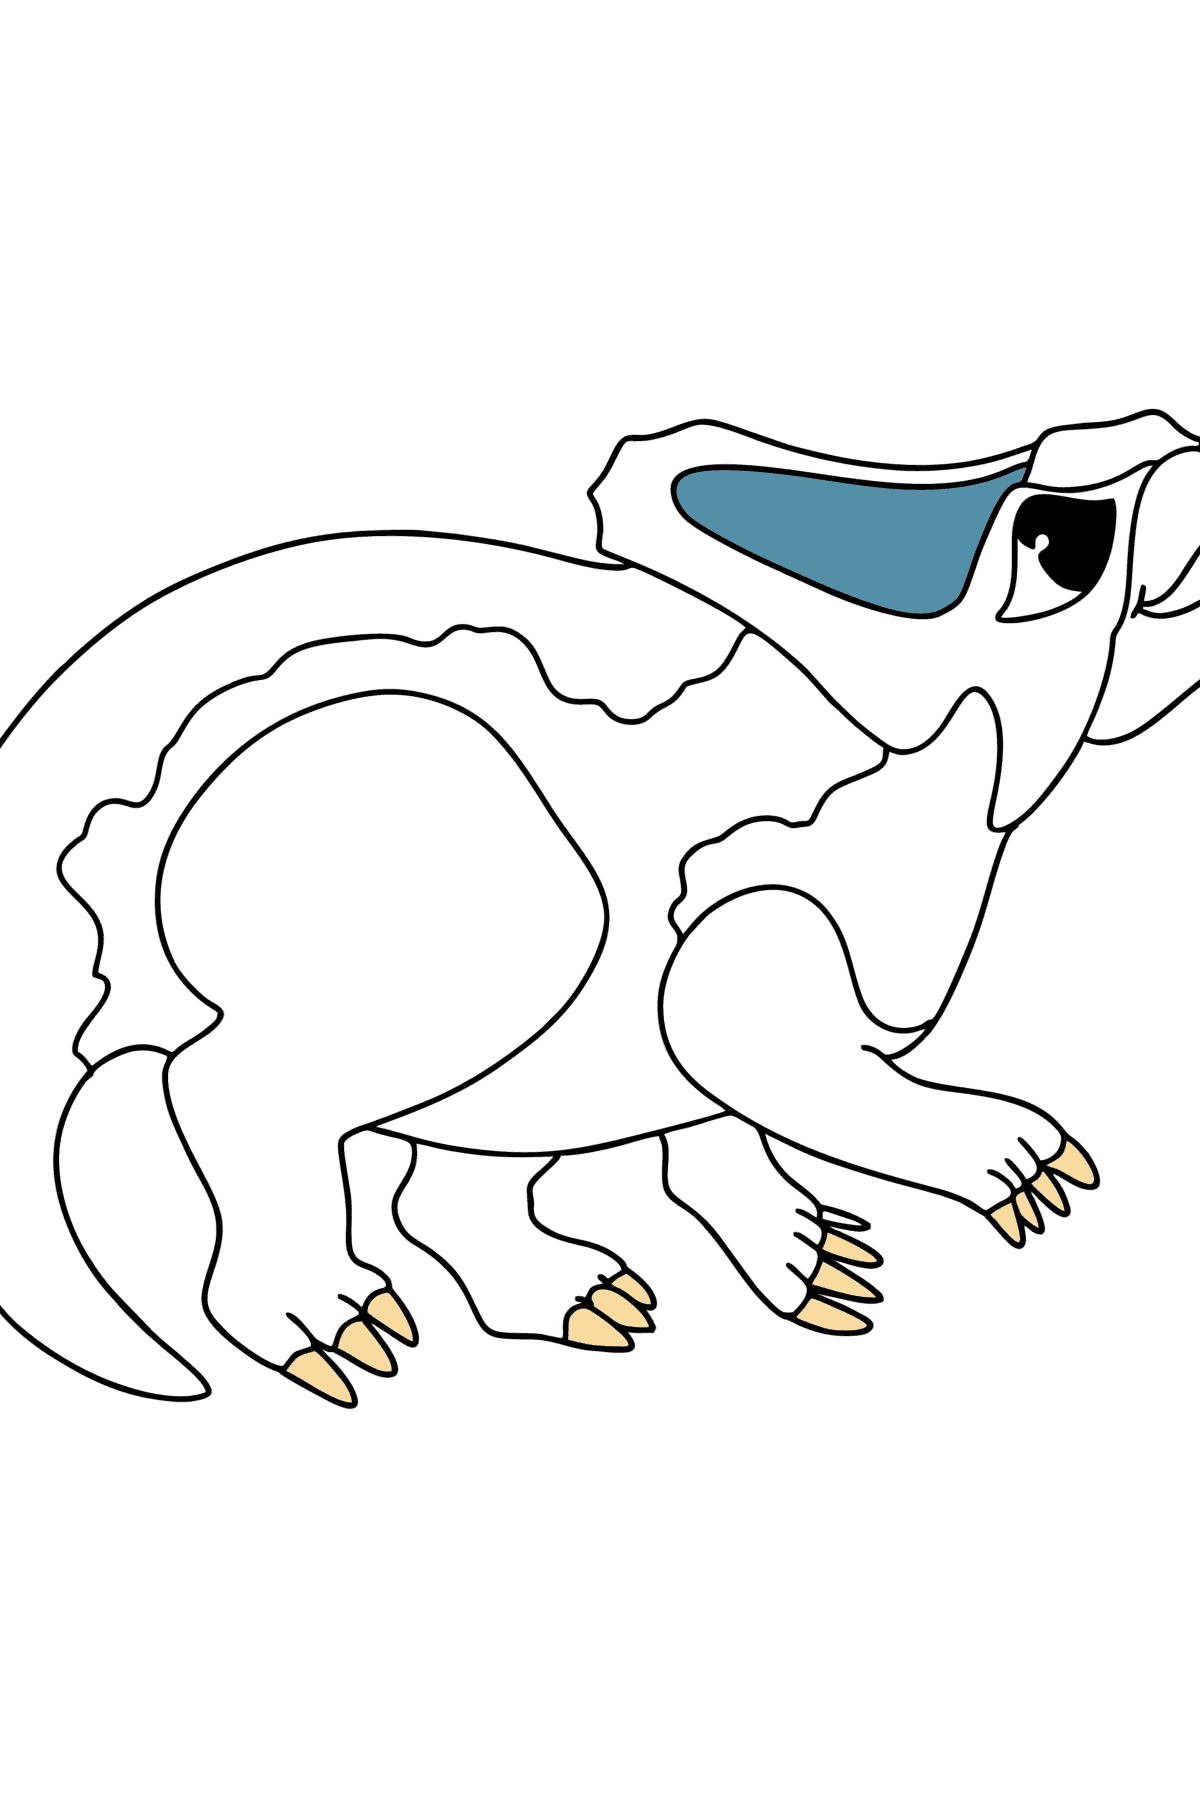 Desenho de Protoceratops para colorir - Imagens para Colorir para Crianças